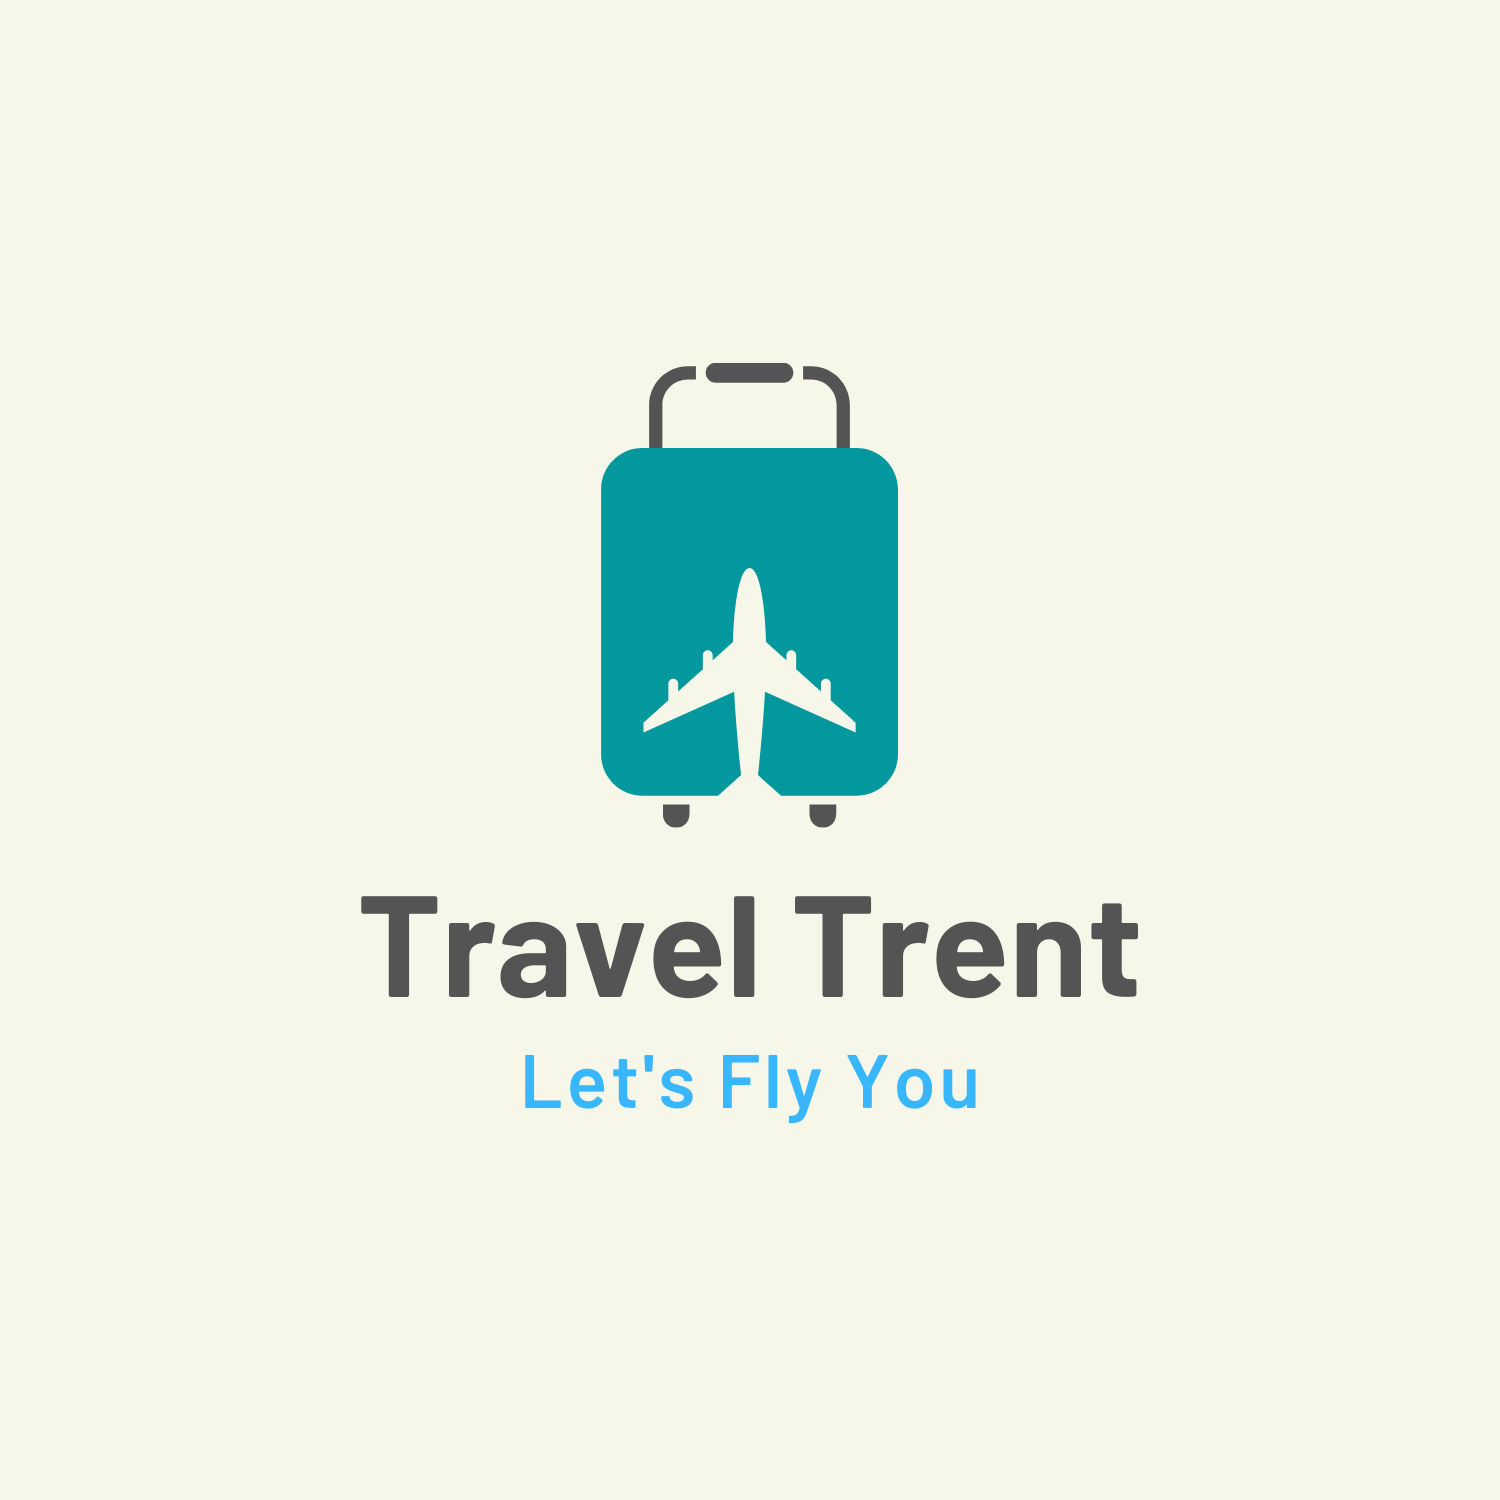 Travel Trent